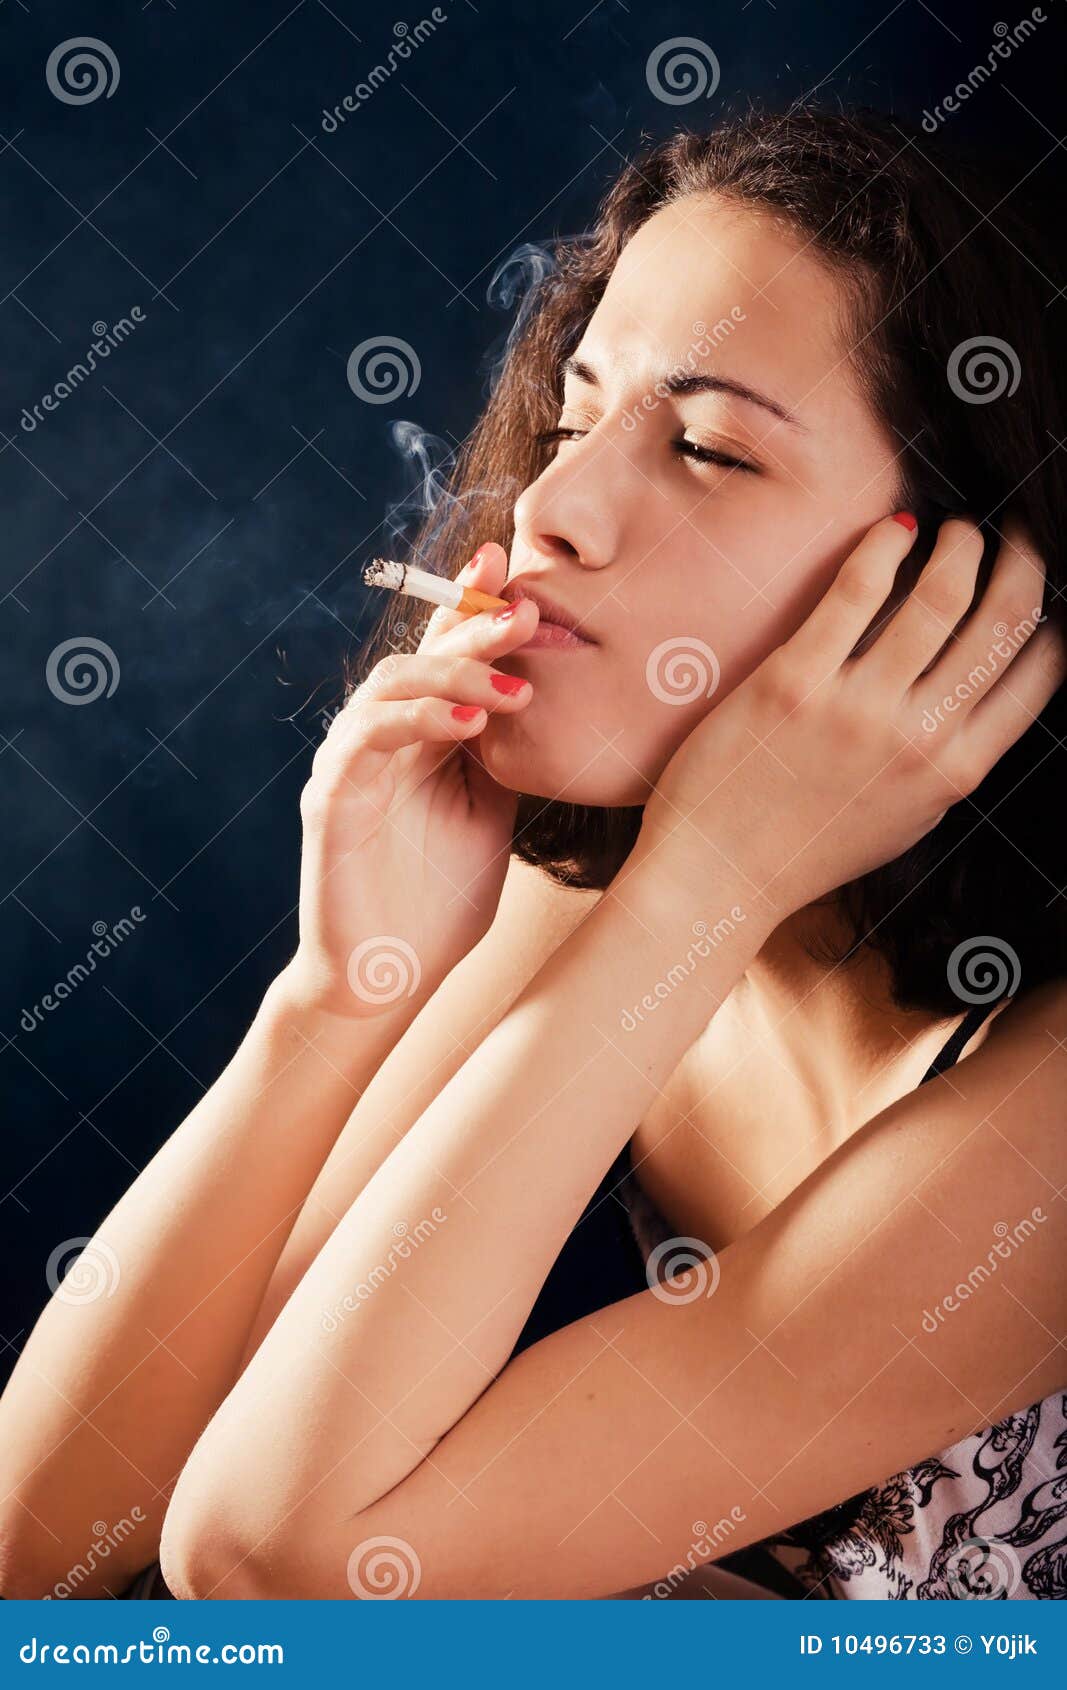 deb viau reccomend pretty girls smoking cigarettes pic